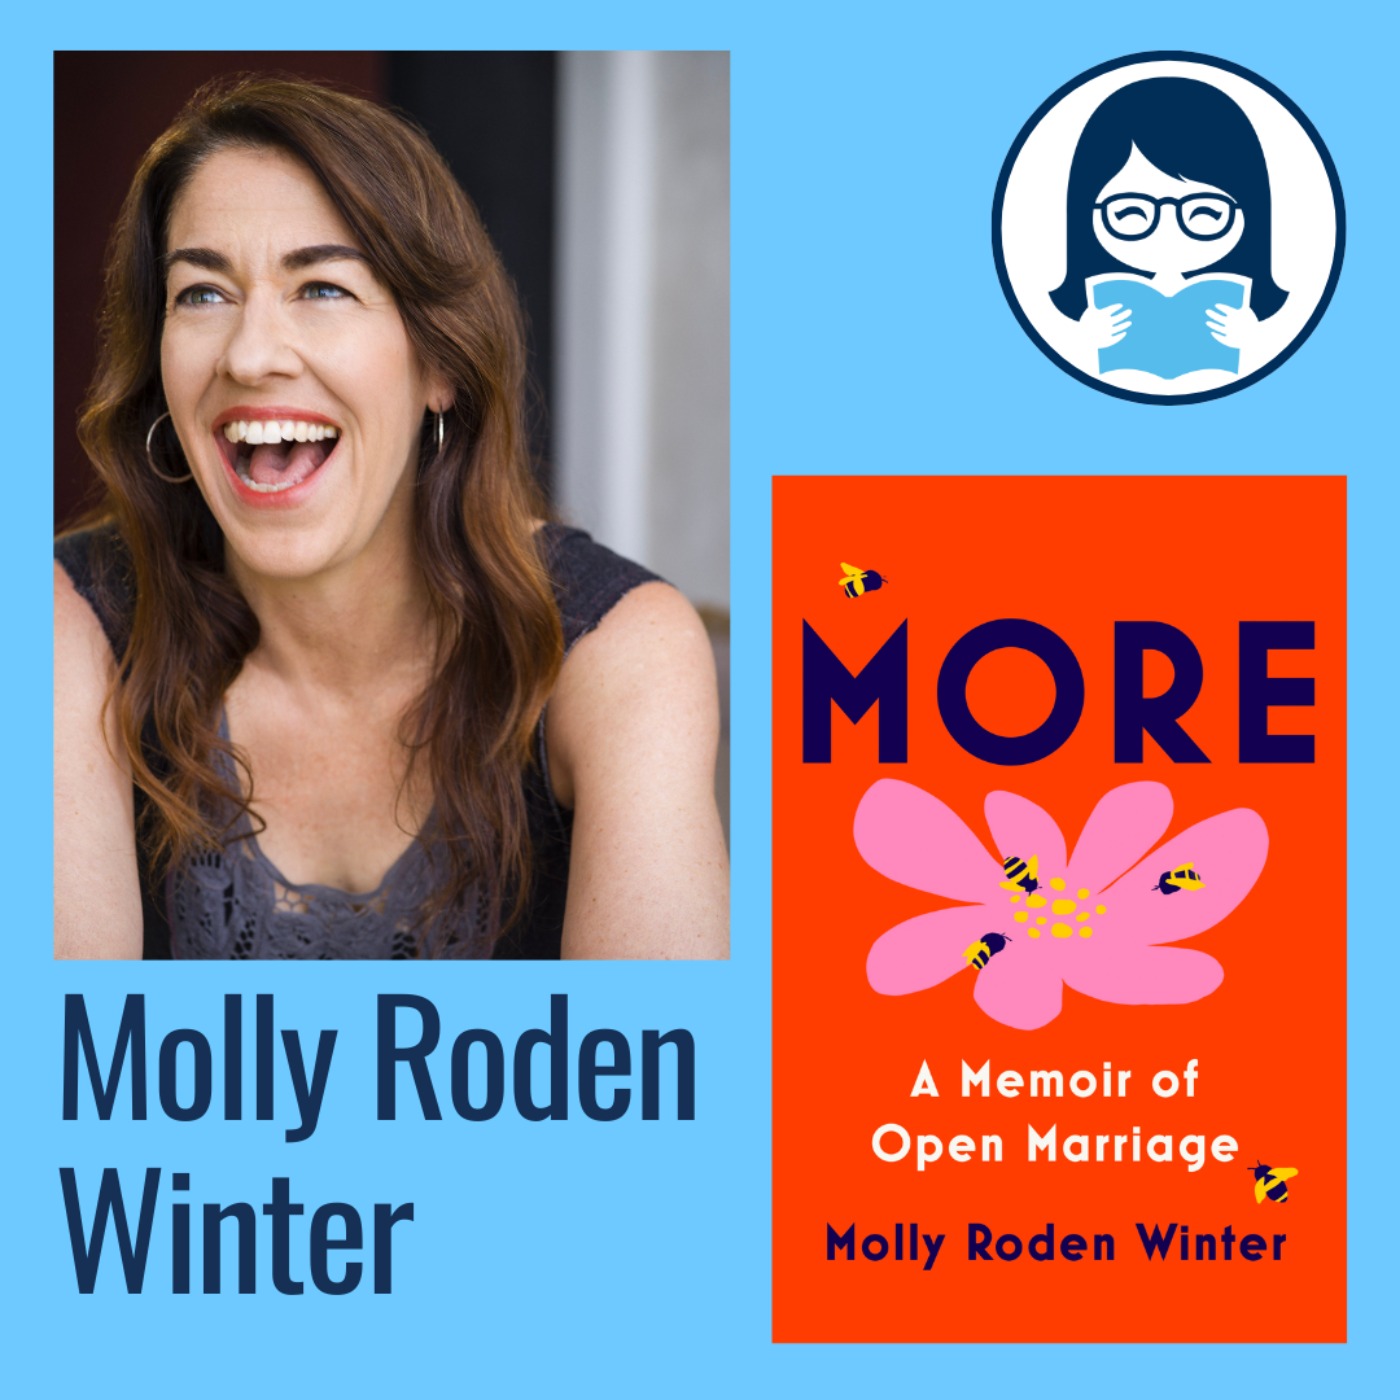 Molly Roden Winter, MORE: A Memoir of Open Marriage